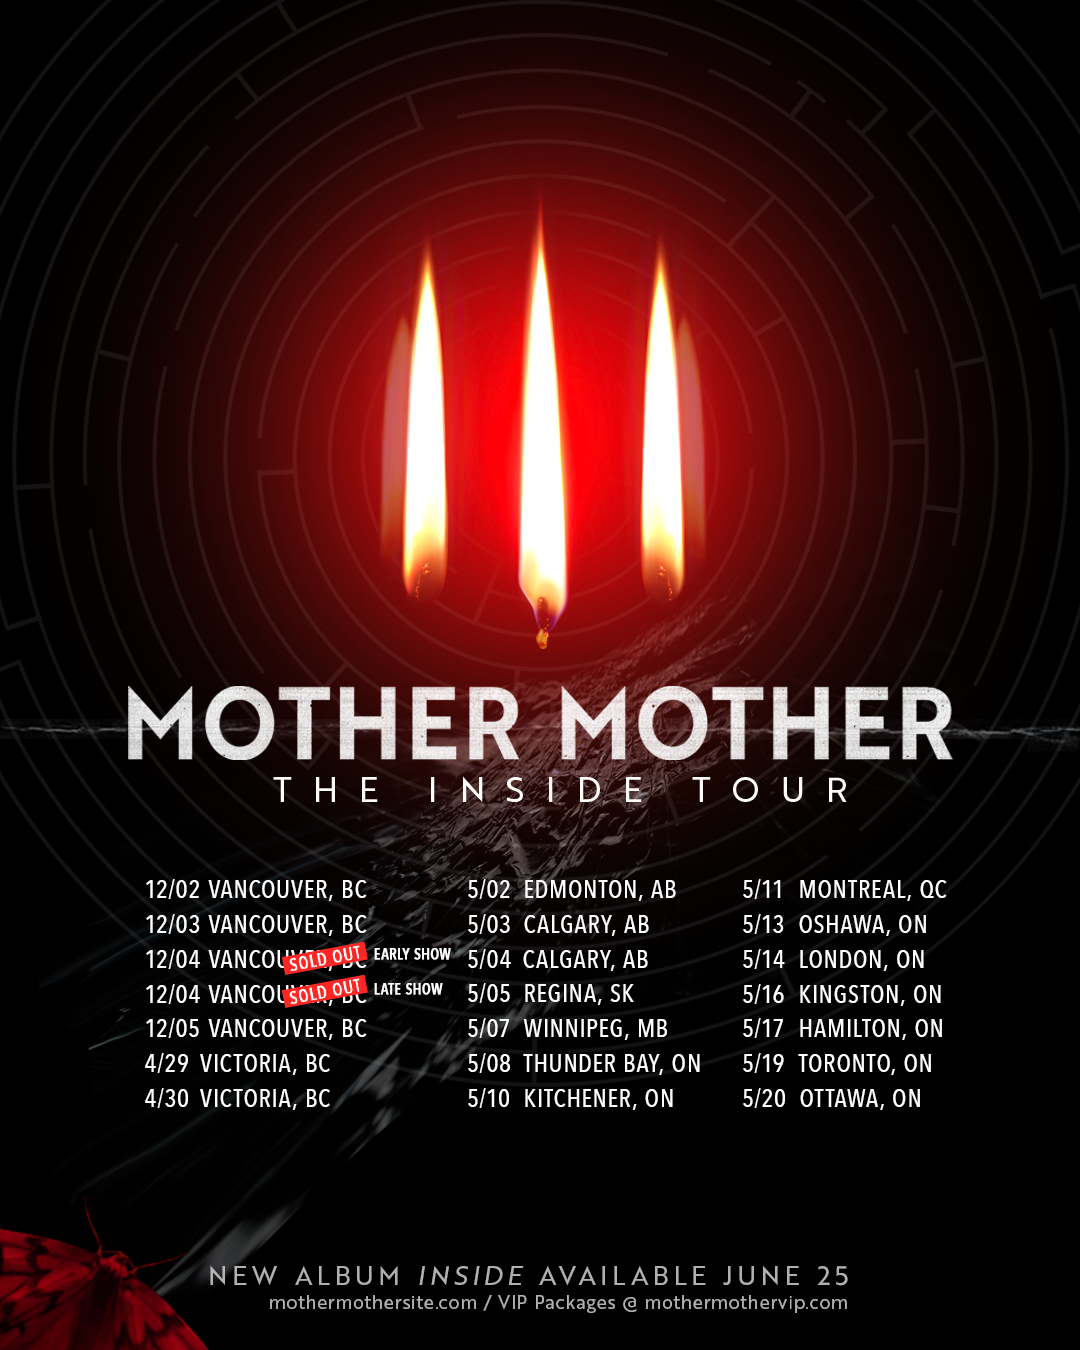 Mother Mother Announces 2022 Canadian Tour Dates - That Eric Alper